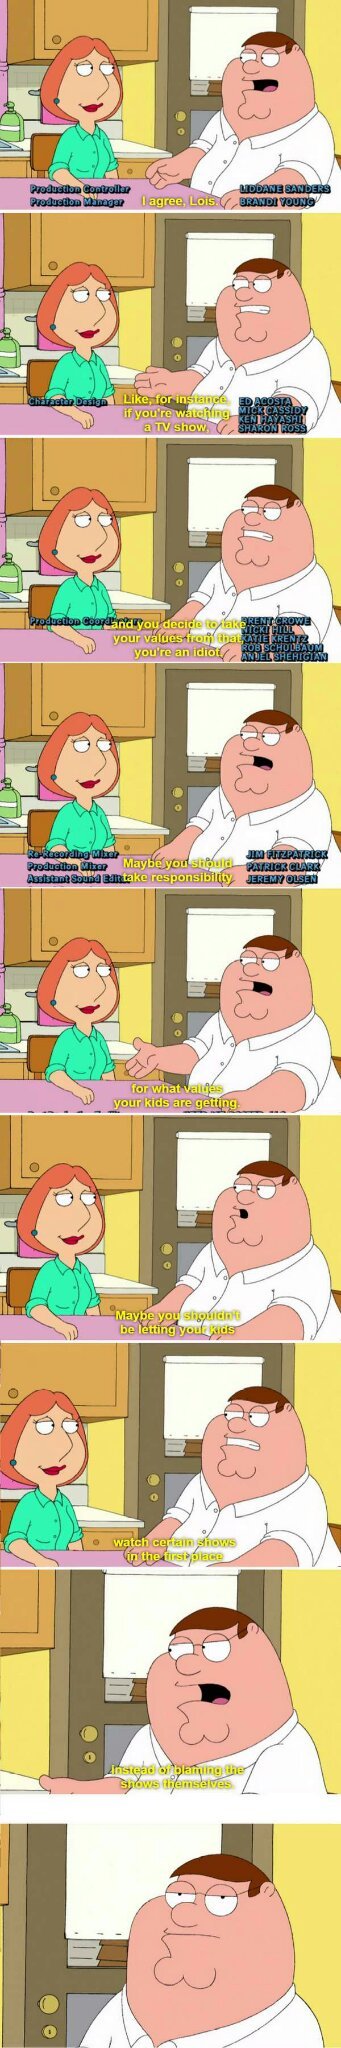 Pointed Family Guy speech - meme